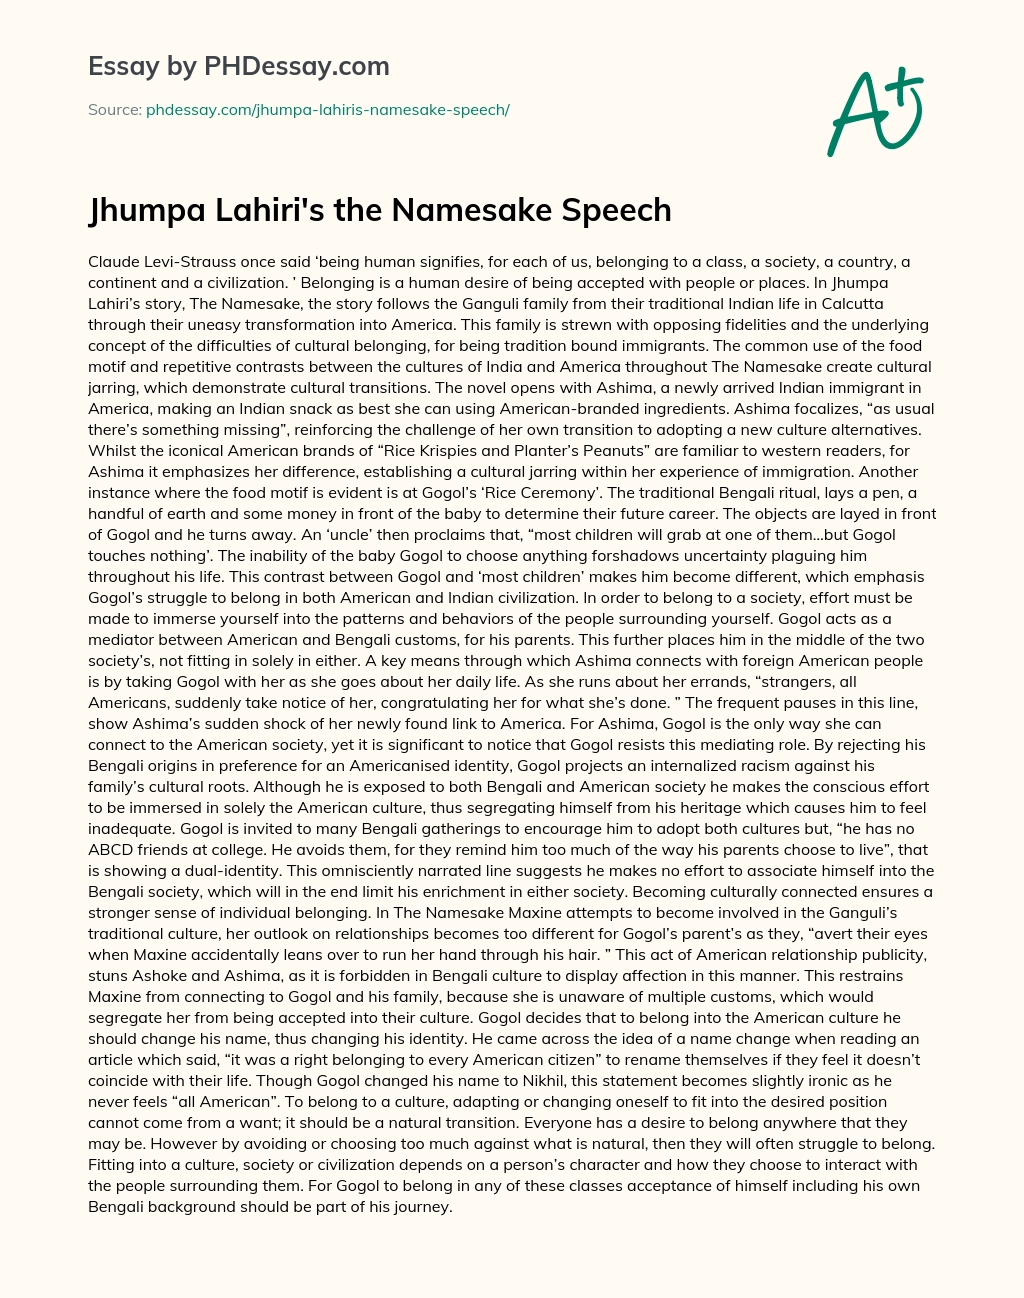 Jhumpa Lahiri’s the Namesake Speech essay